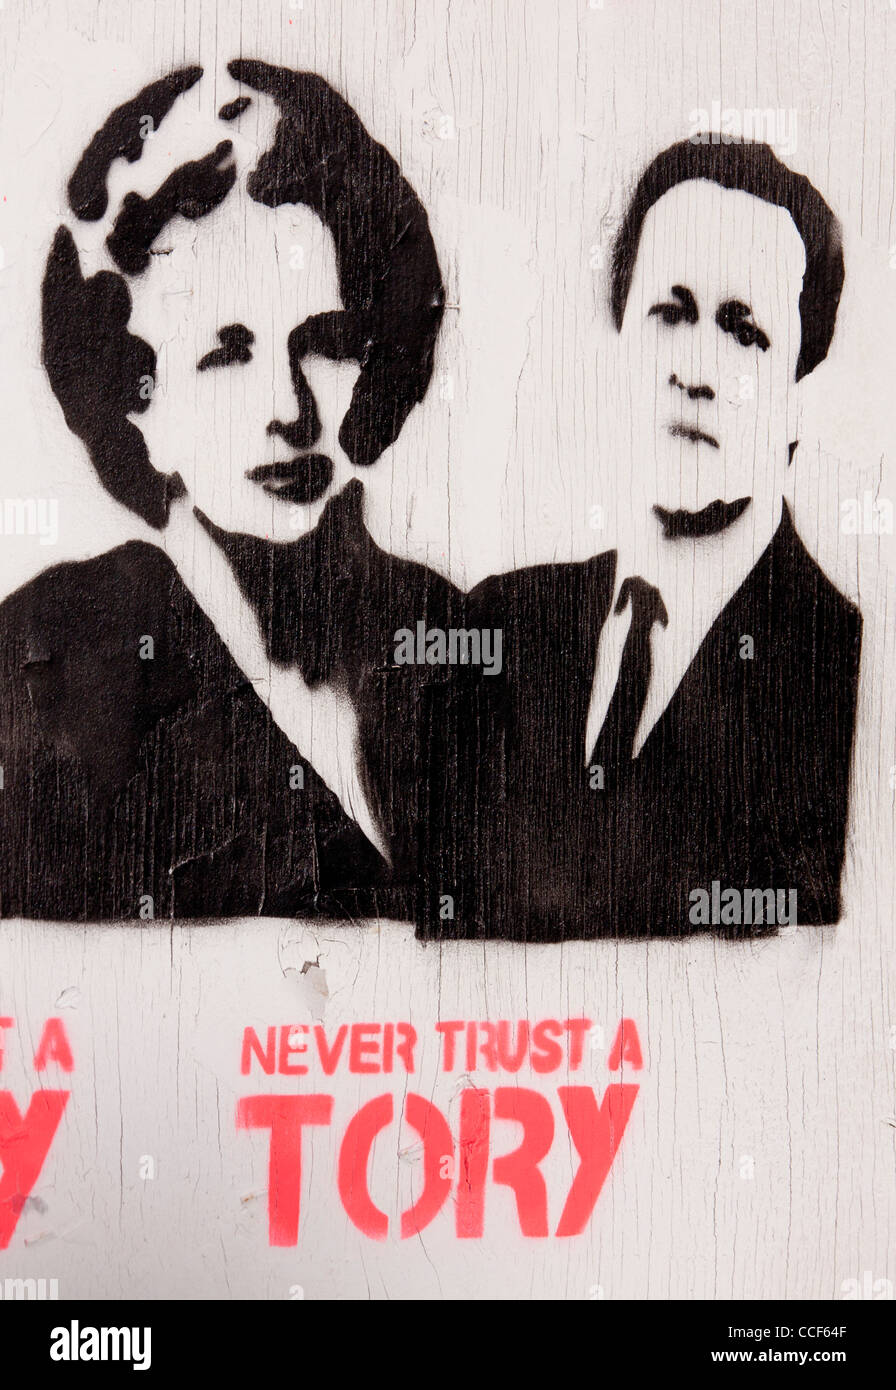 "Traue niemals einen Tory" Schablone Plakatkunst mit Premierminister Thatcher und Cameron auf vernagelten heruntergekommenen Pub Cardiff Wales UK Stockfoto